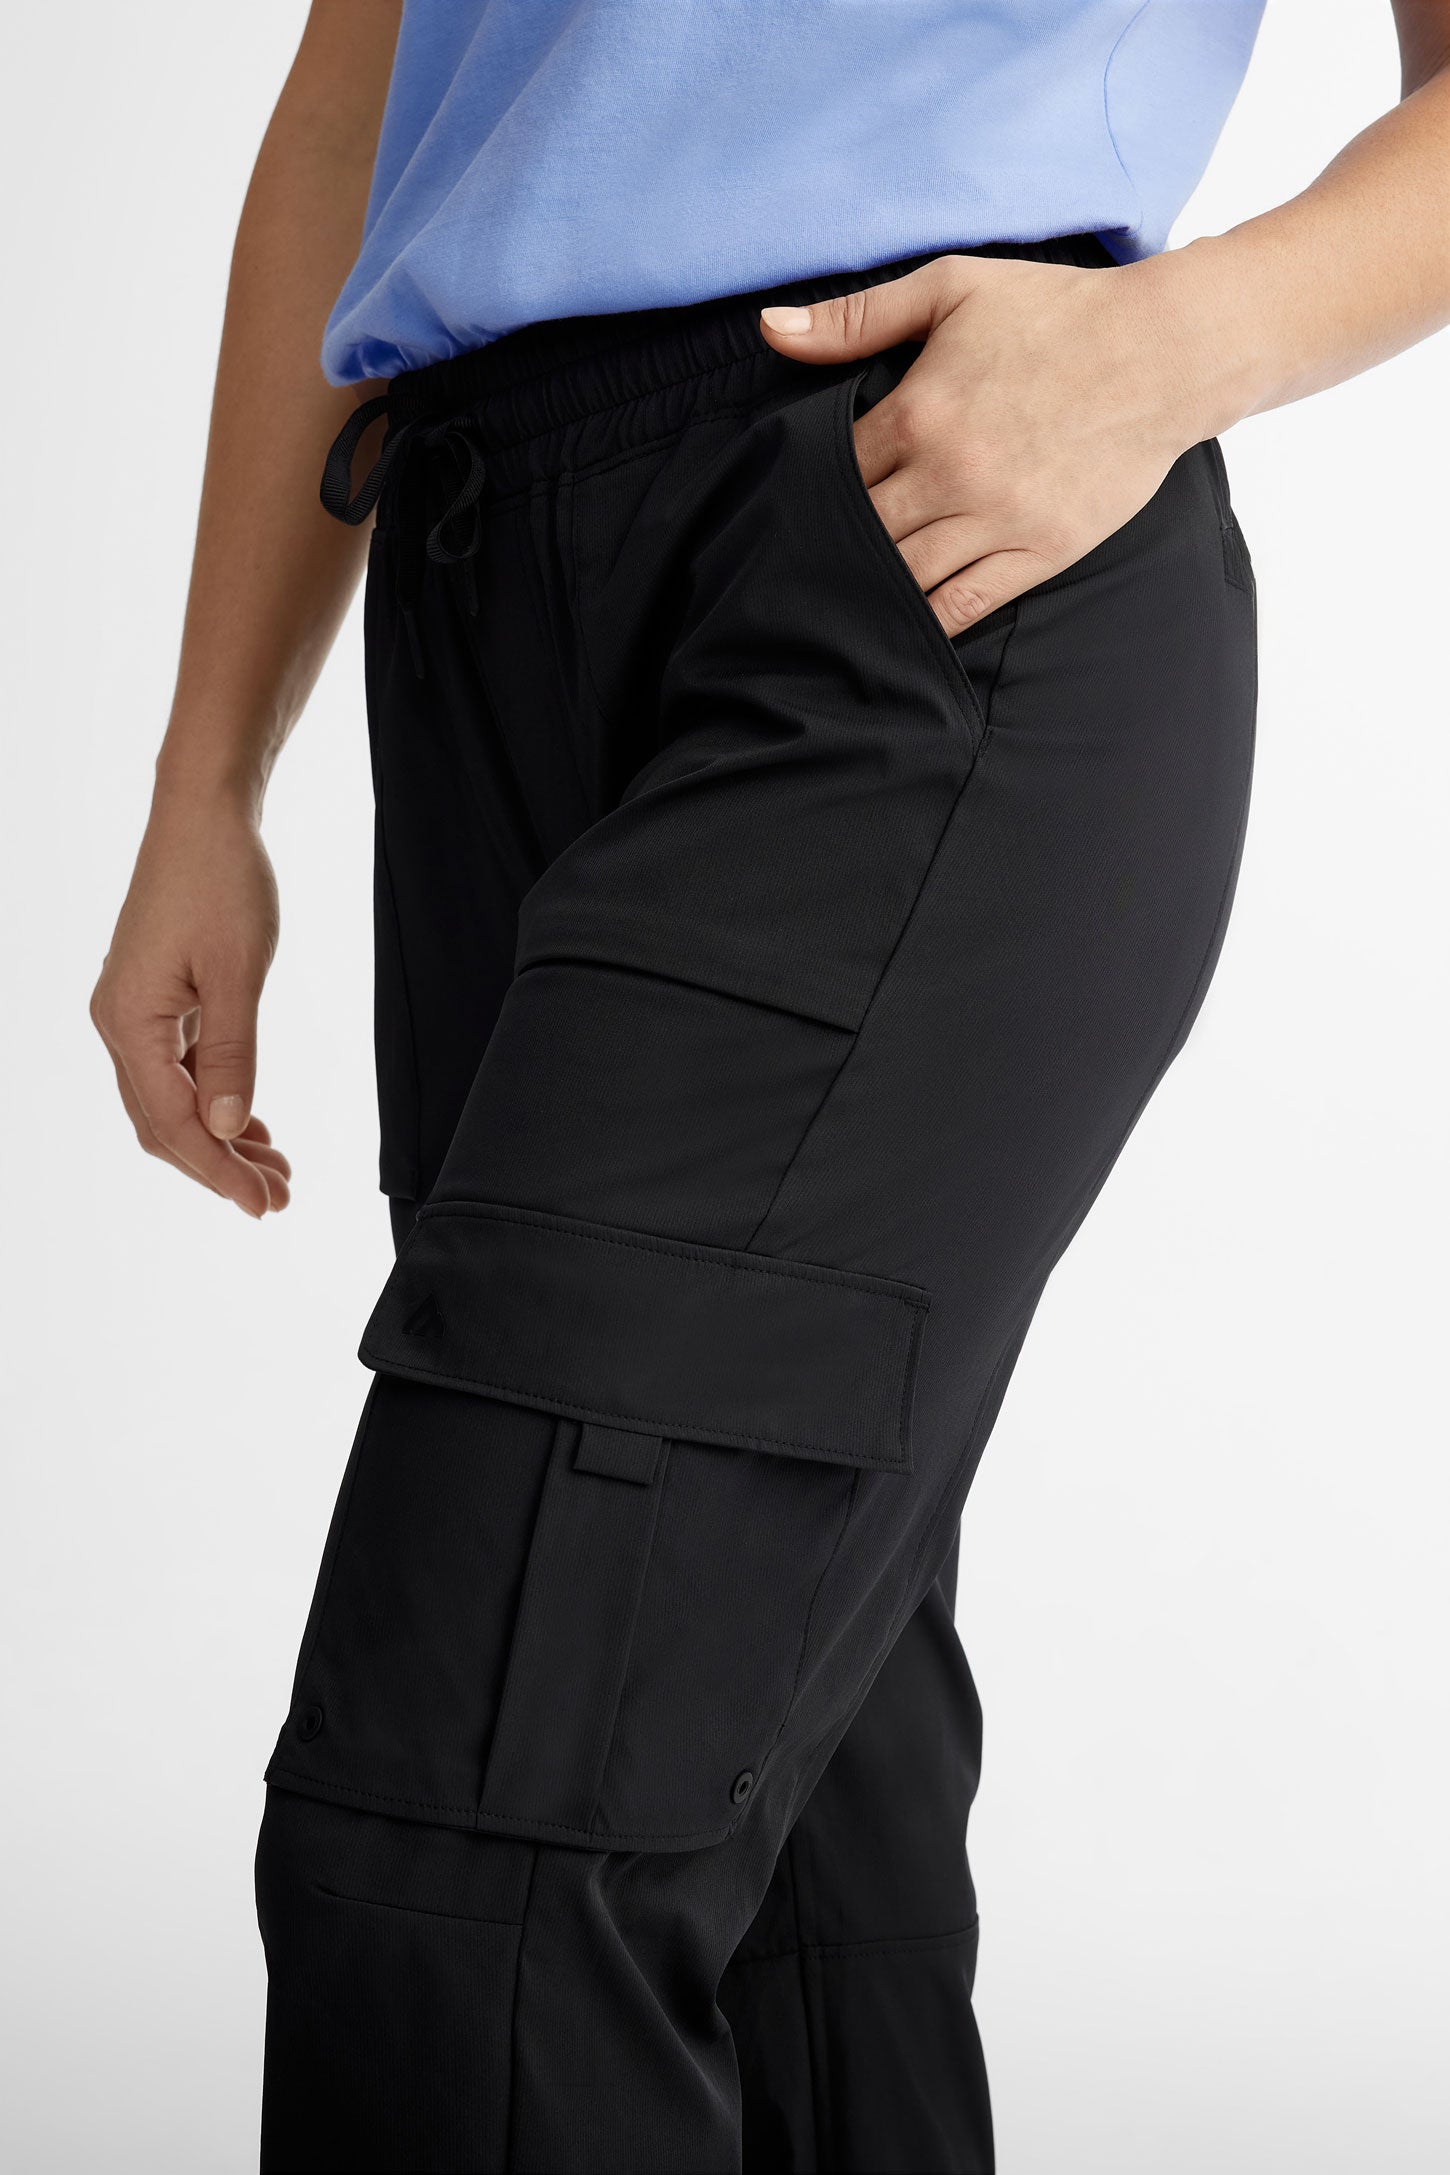 Pantalon cargo taille élastique BM - Femme && NOIR